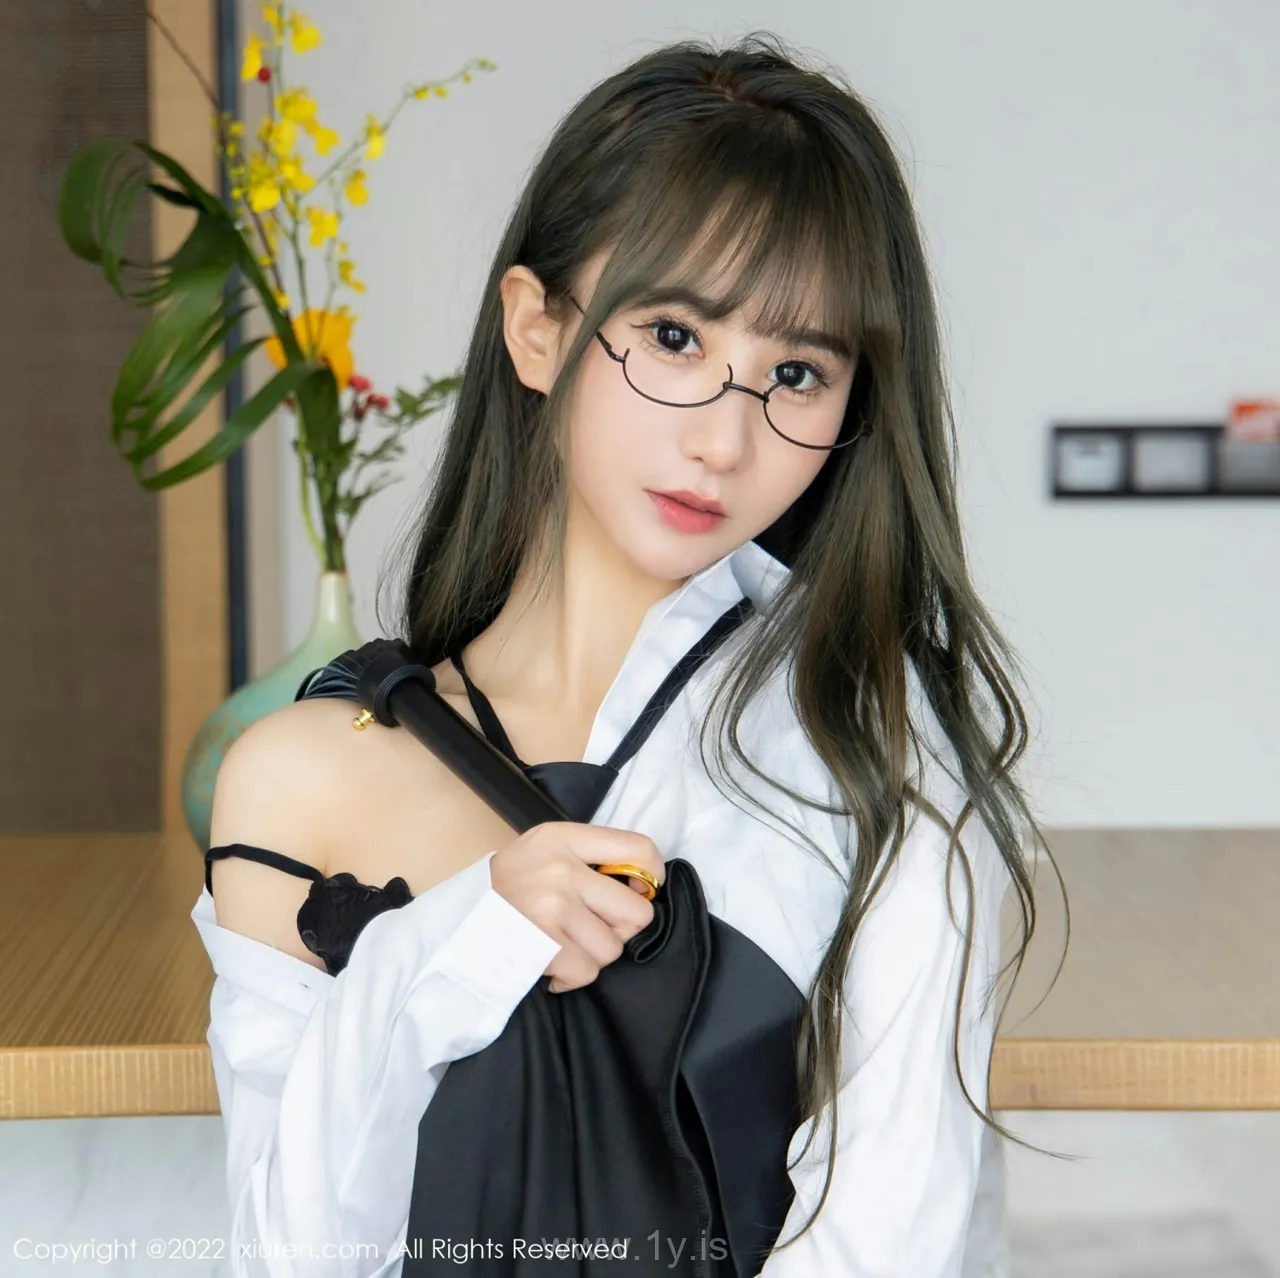 XIUREN(秀人网) NO.4789 Attractive & Delightful Asian Cutie 小果冻儿